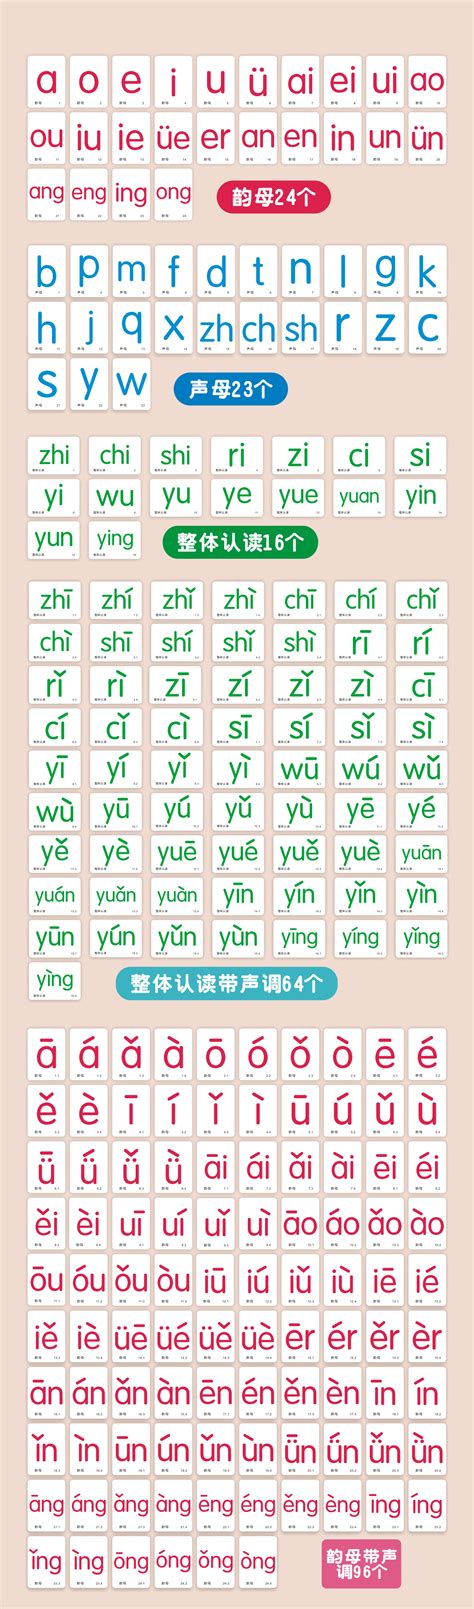 普通話拼音字典 PinYin Dictionary